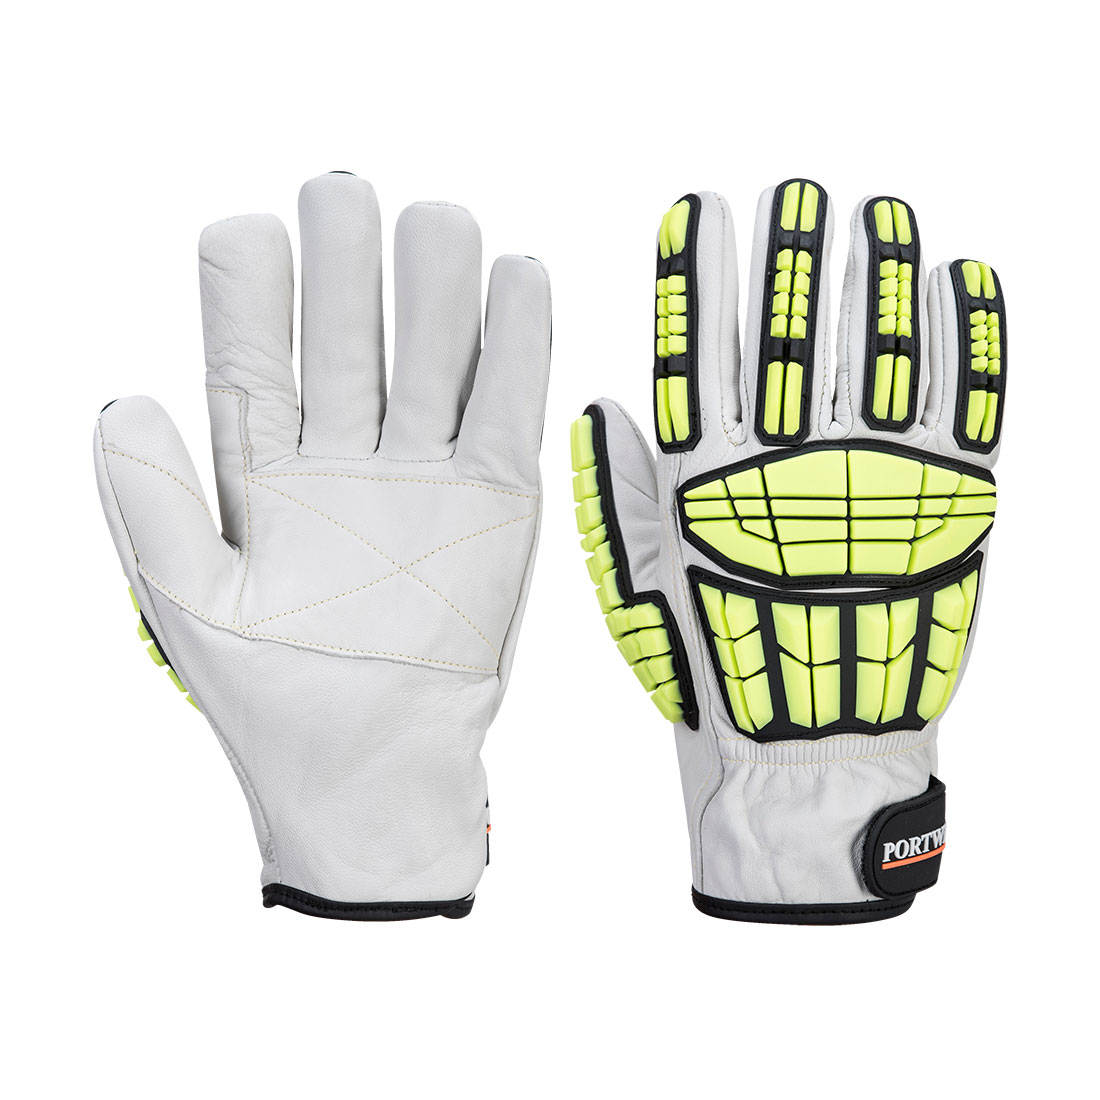 Portwest A745 - Impact Pro Cut Glove